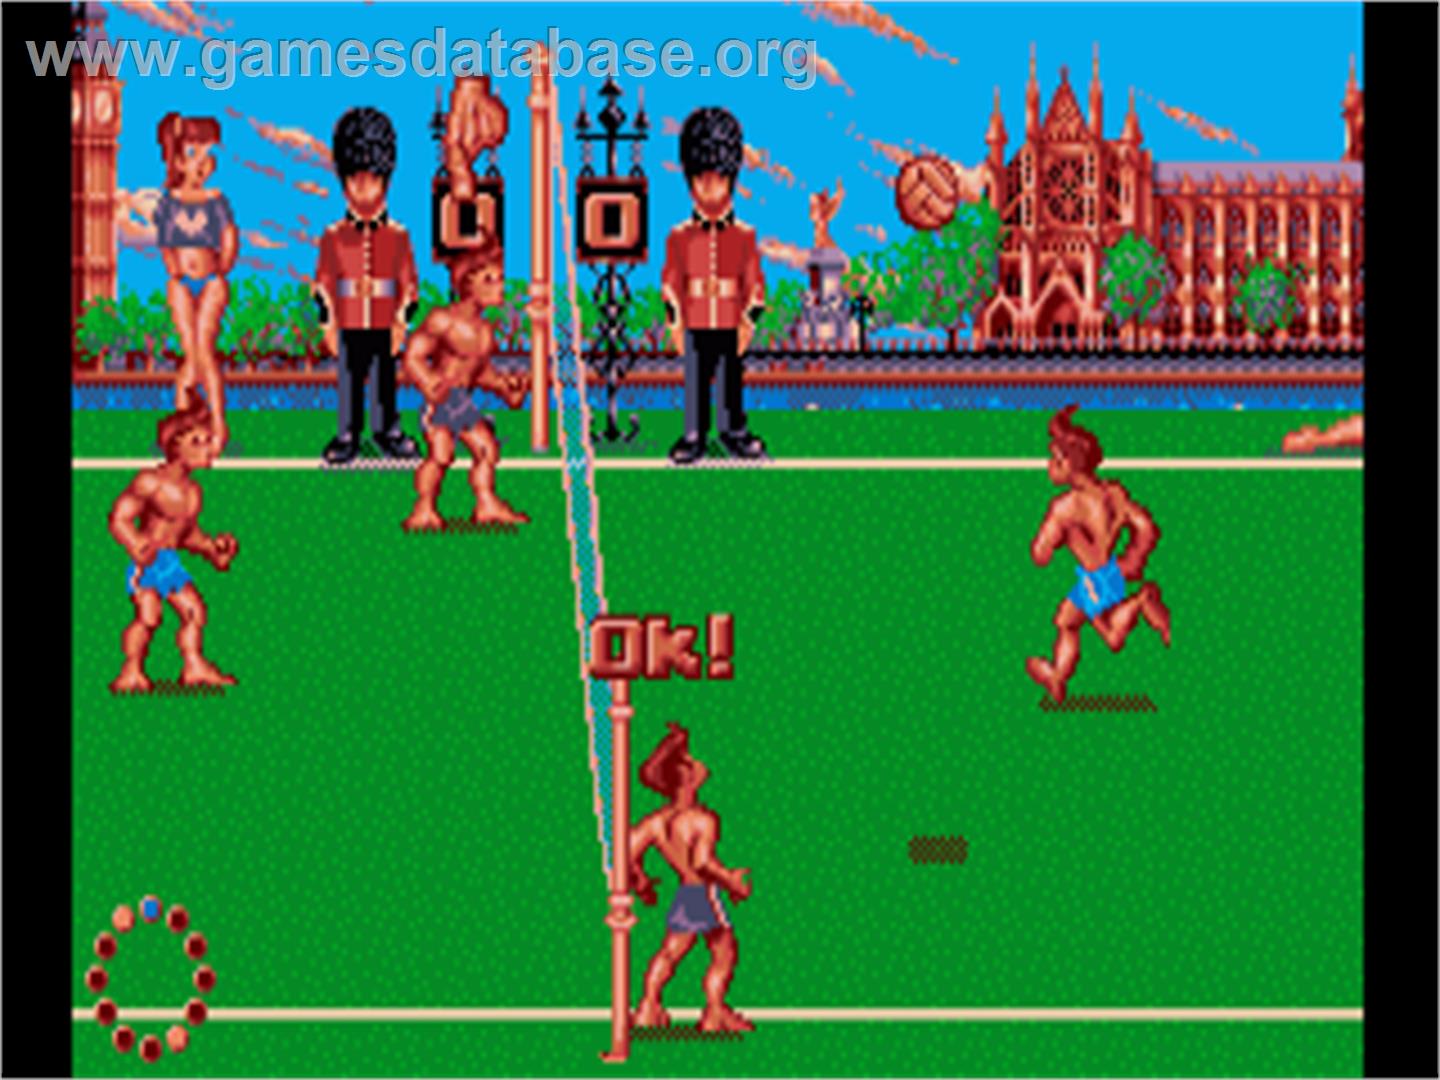 Beach Volley - Commodore Amiga - Artwork - In Game